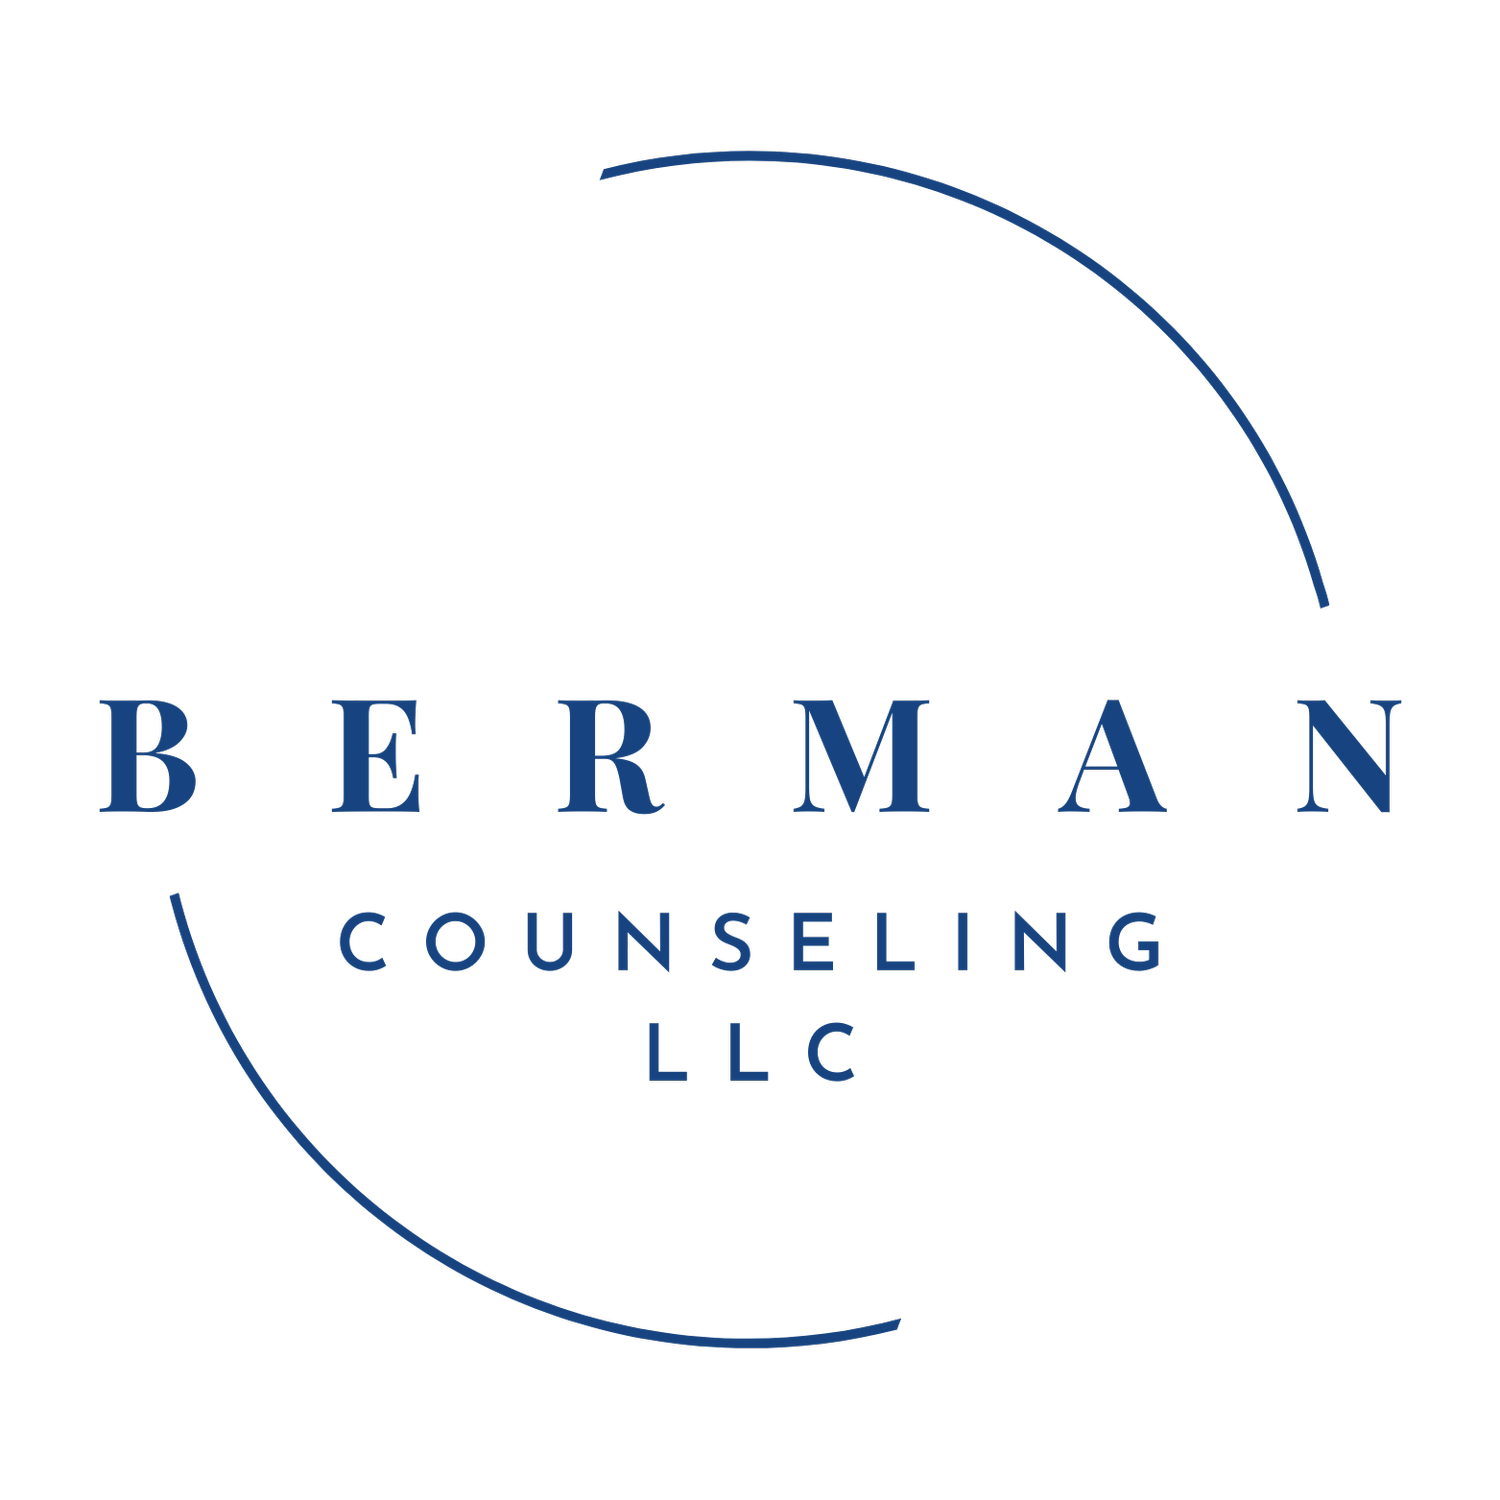 Berman Counseling LLC